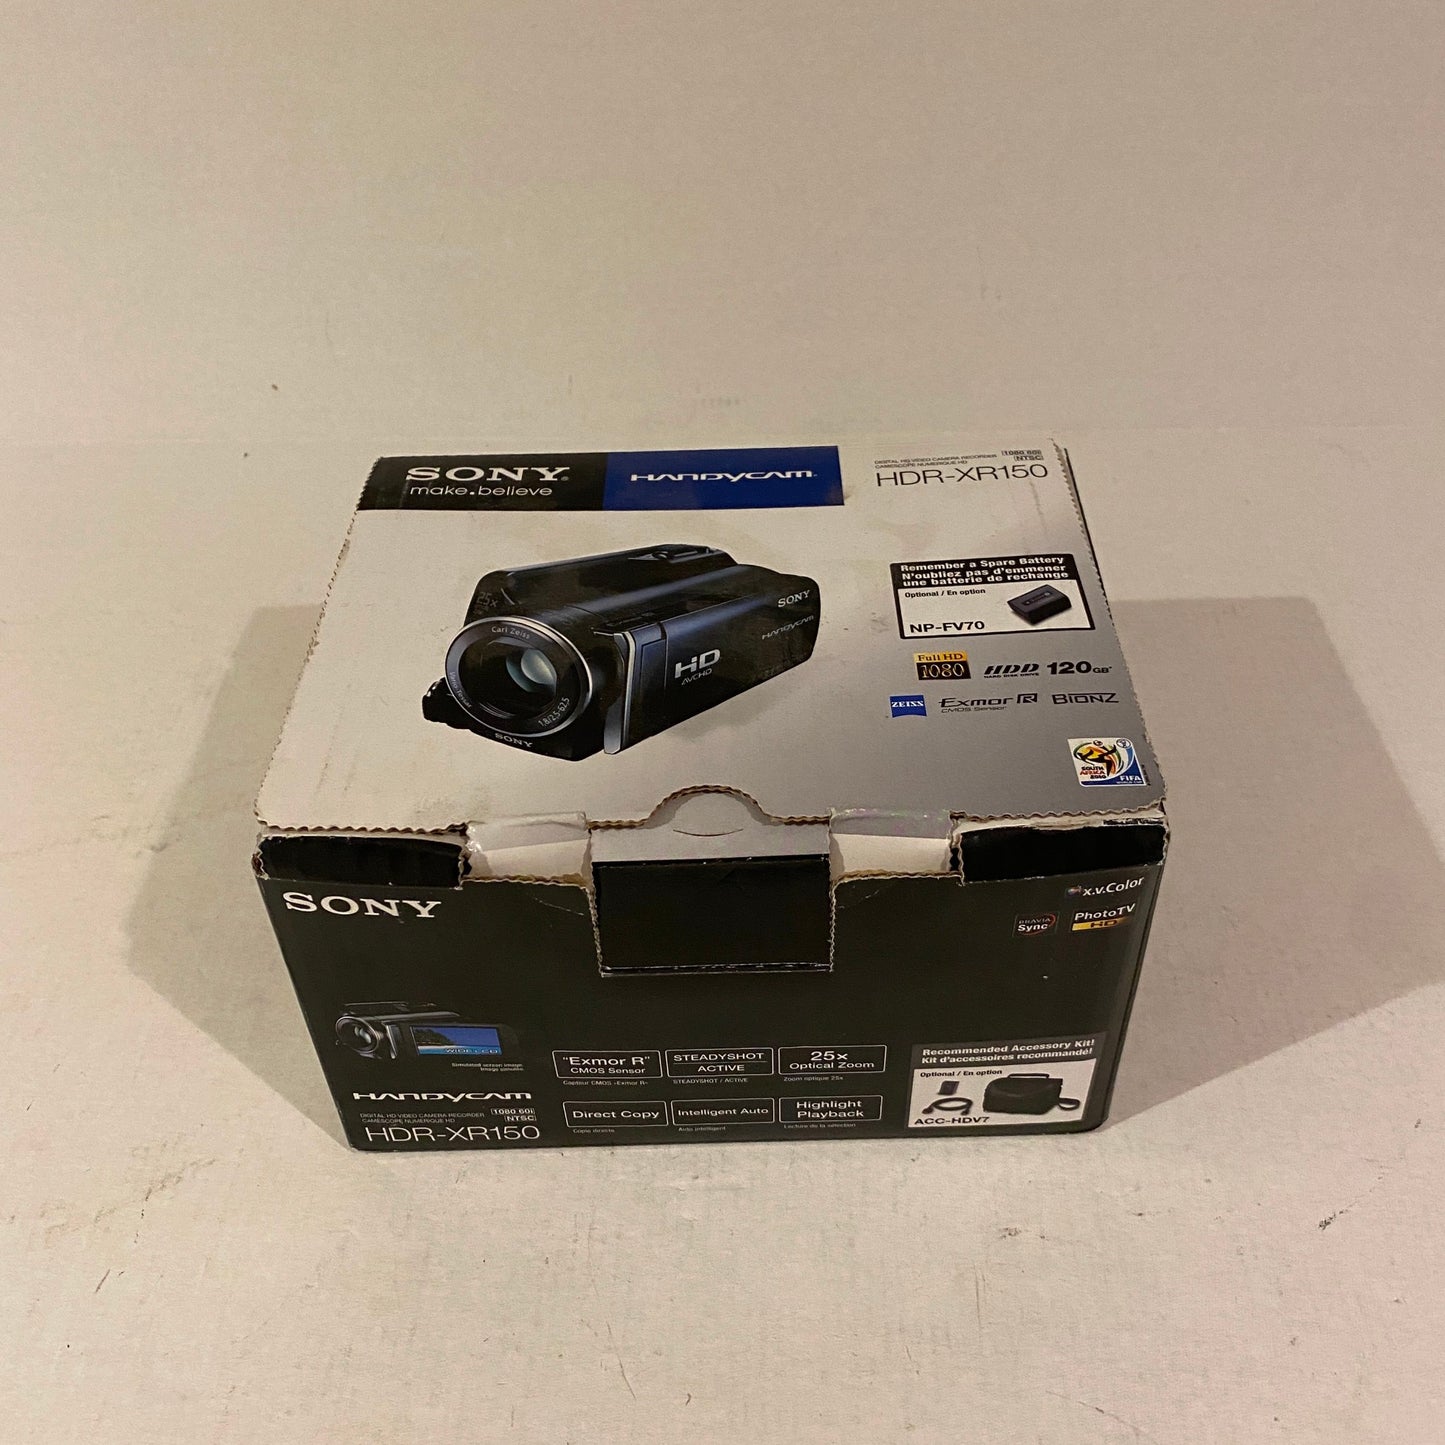 Sony Handycam 120 GB HDD Full HD - HDR-XR150